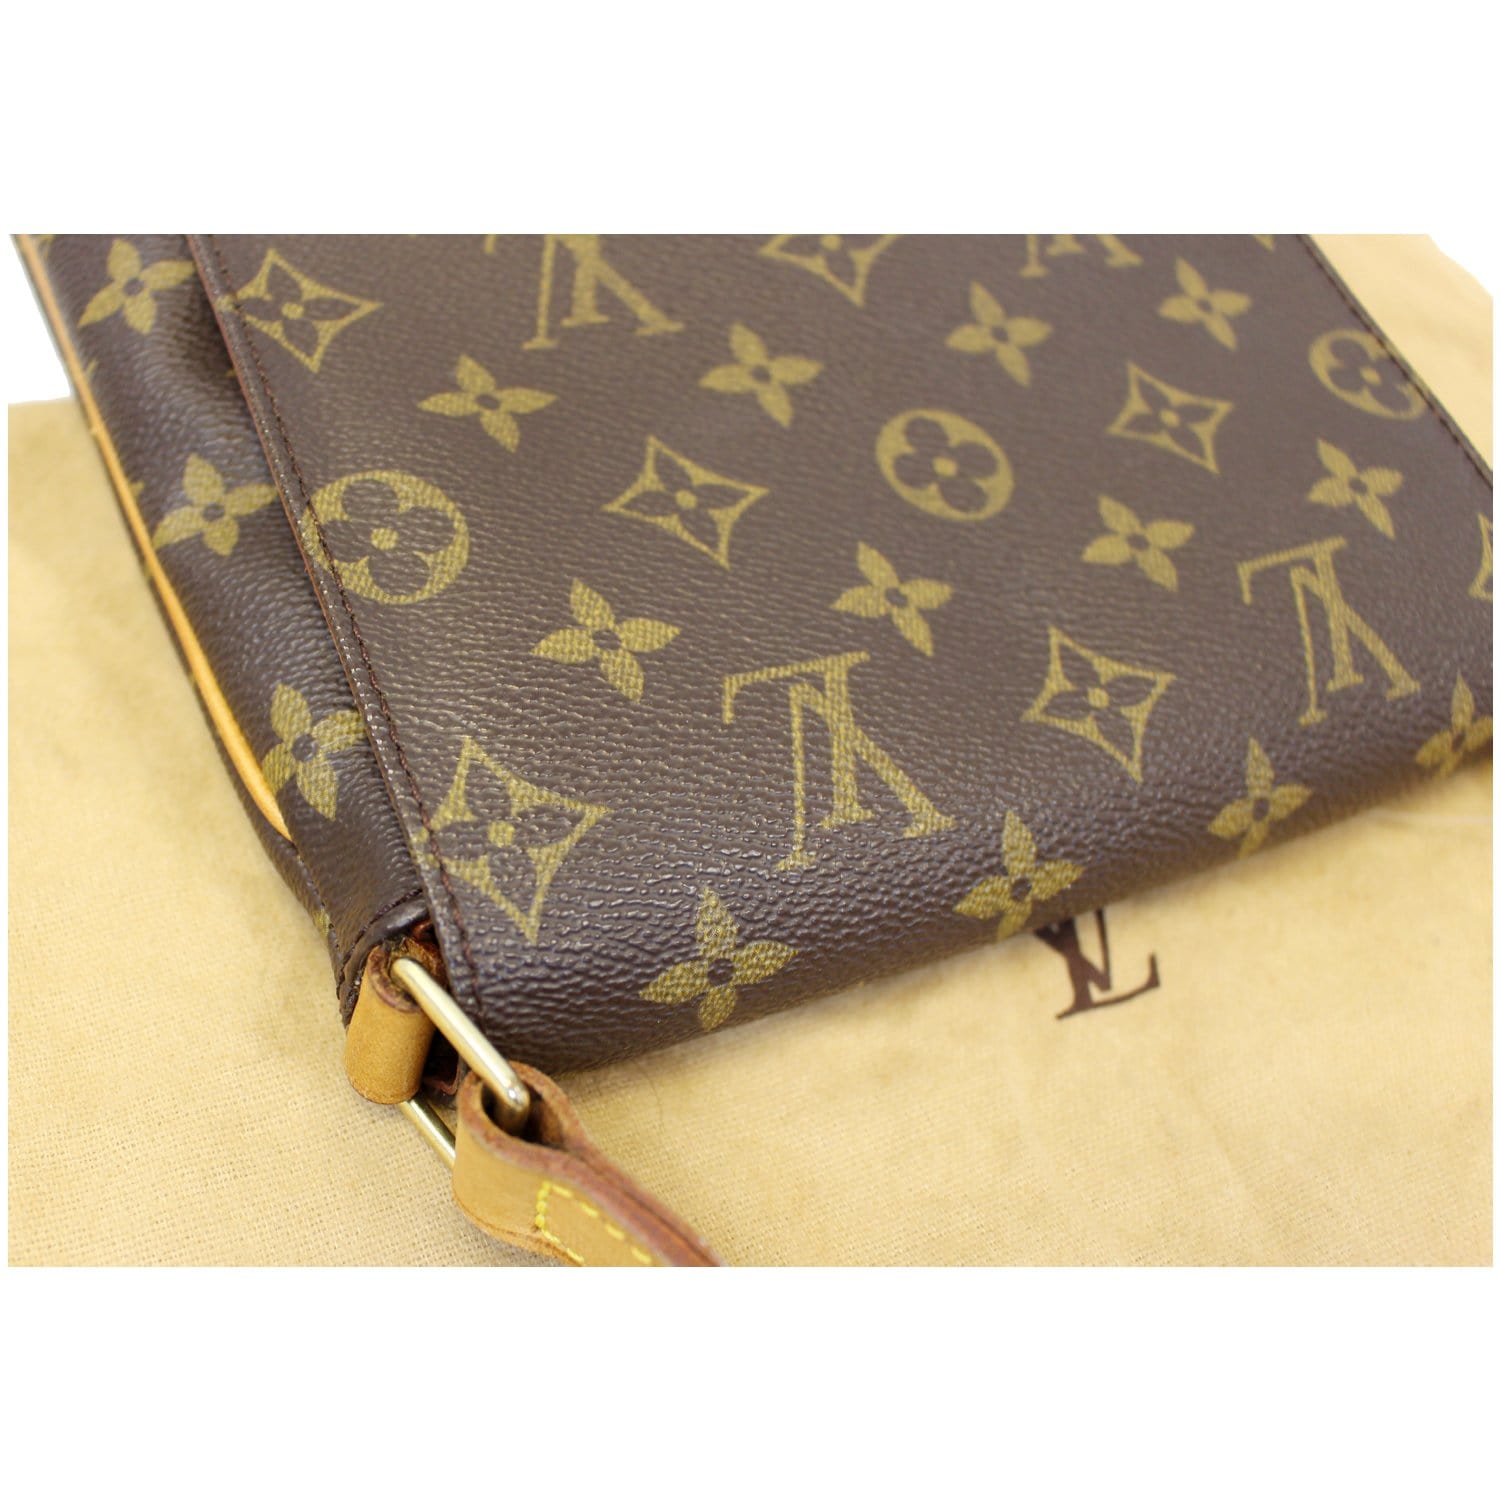 Louis Vuitton Monogram Musette Salsa PM Short Strap Bag – I MISS